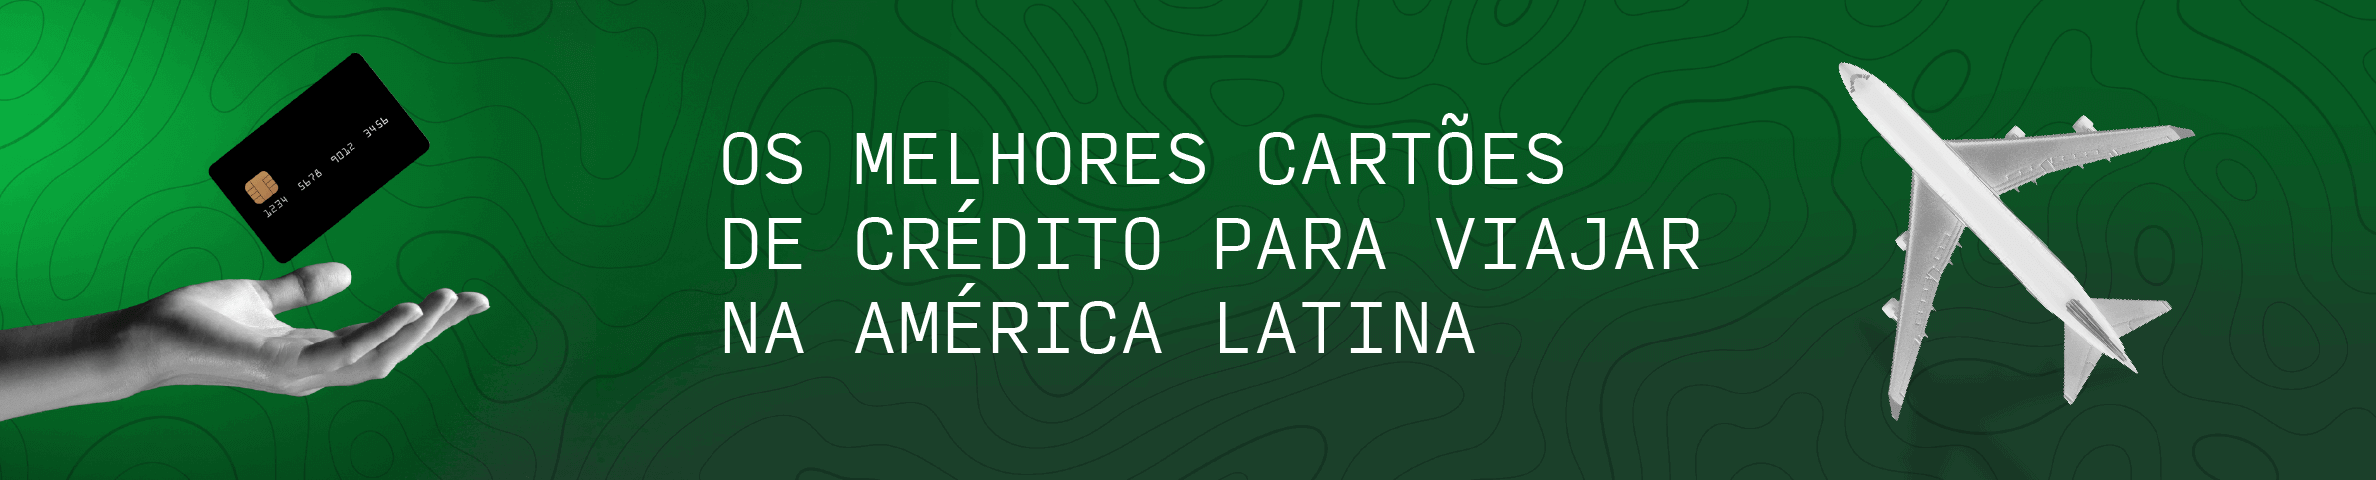 Os Melhores Cartões de Crédito para Viajar na América Latina